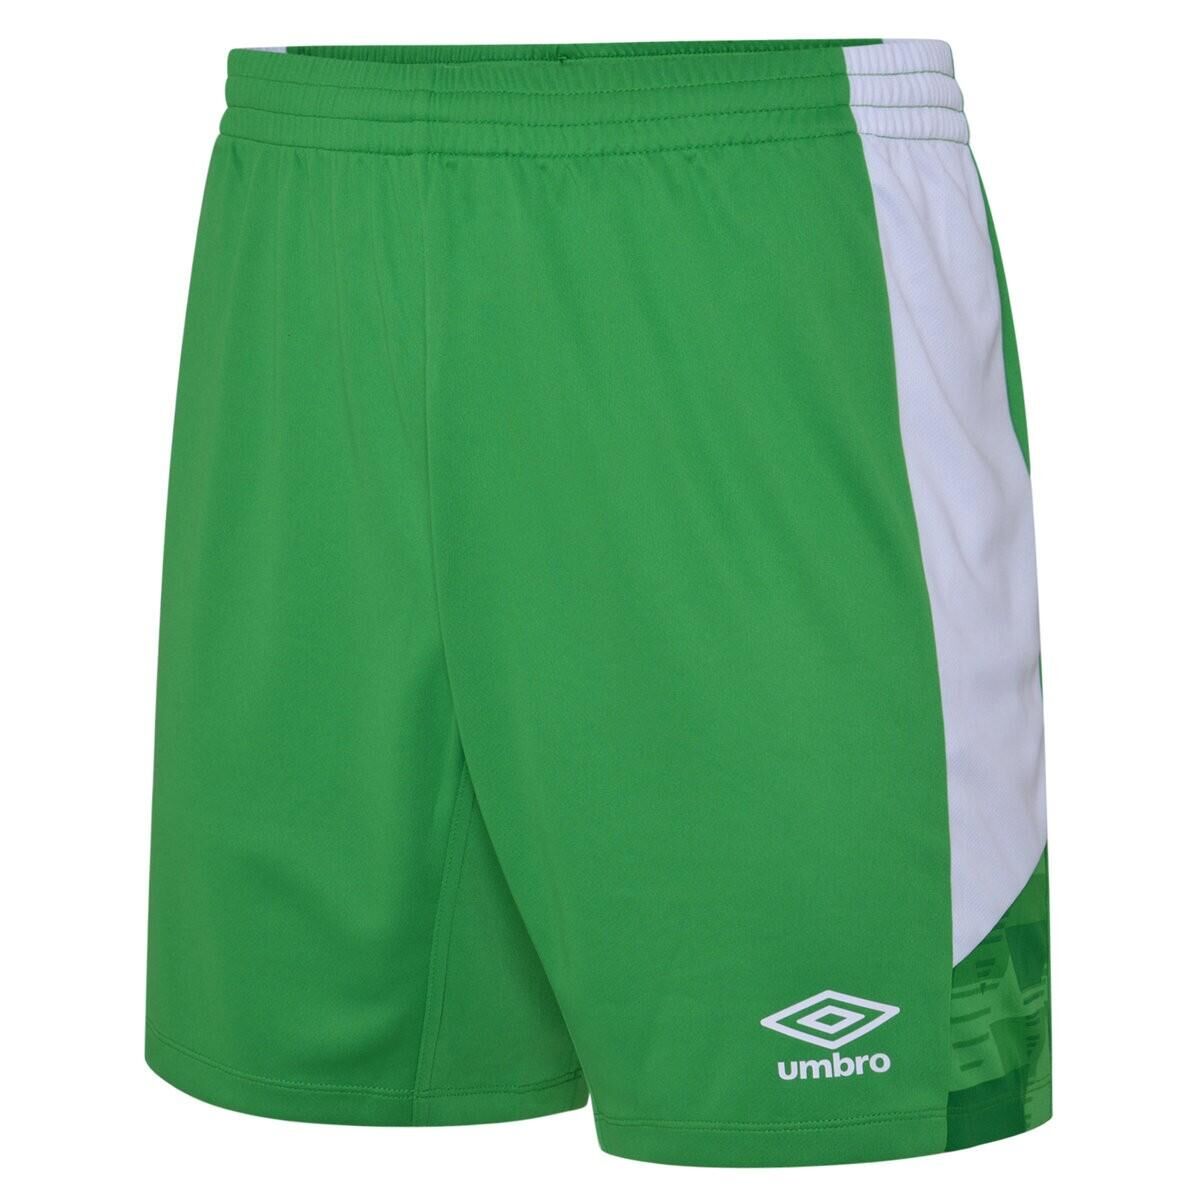 UMBRO Mens Vier Shorts (Emerald/White)